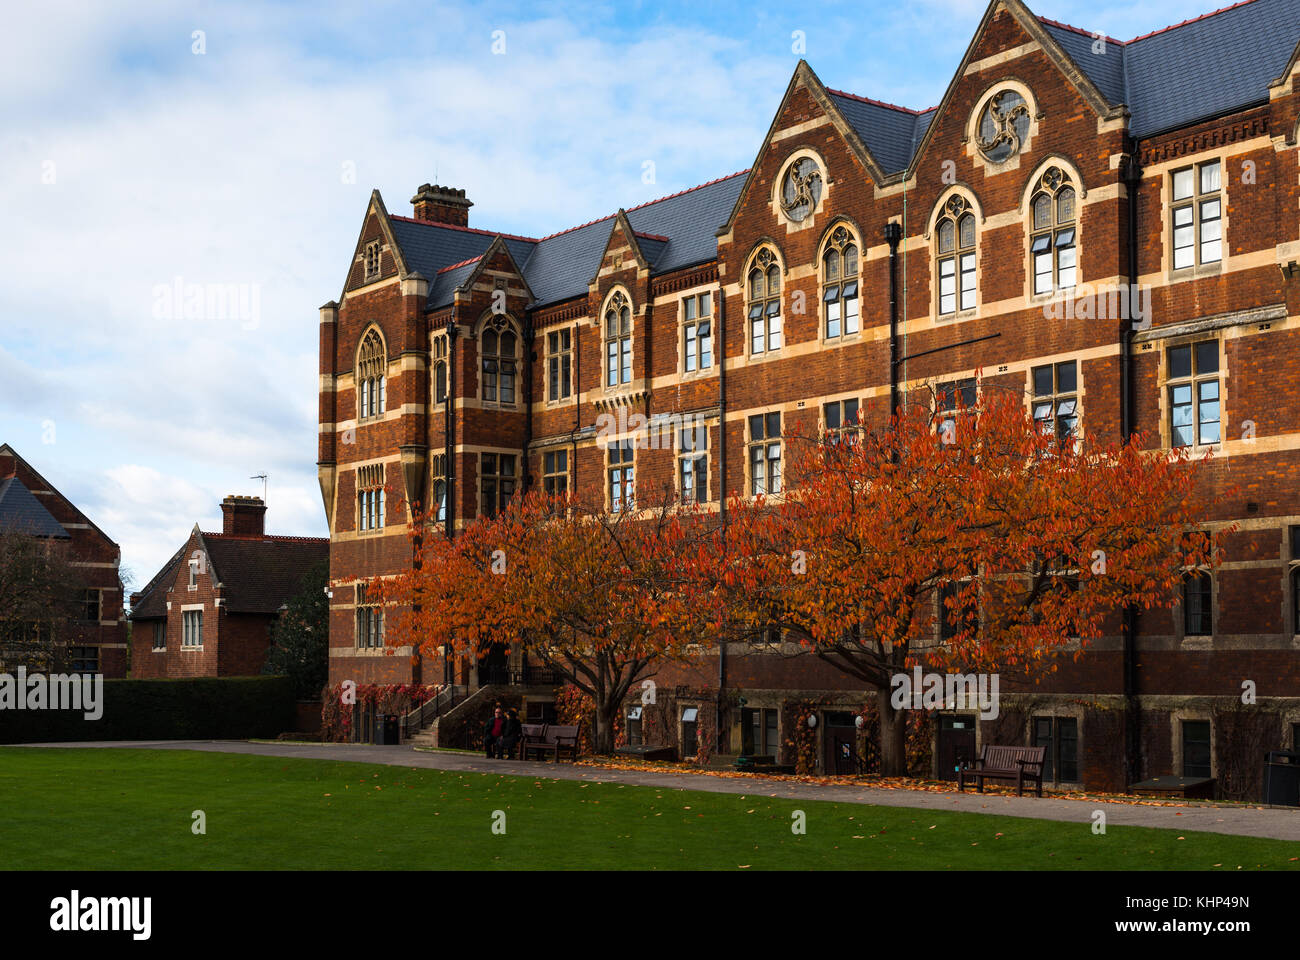 Der Norden Haus Der Leys School Einer Von Englands Premier Unabhangige Schulen Cambridge England Uk Stockfotografie Alamy